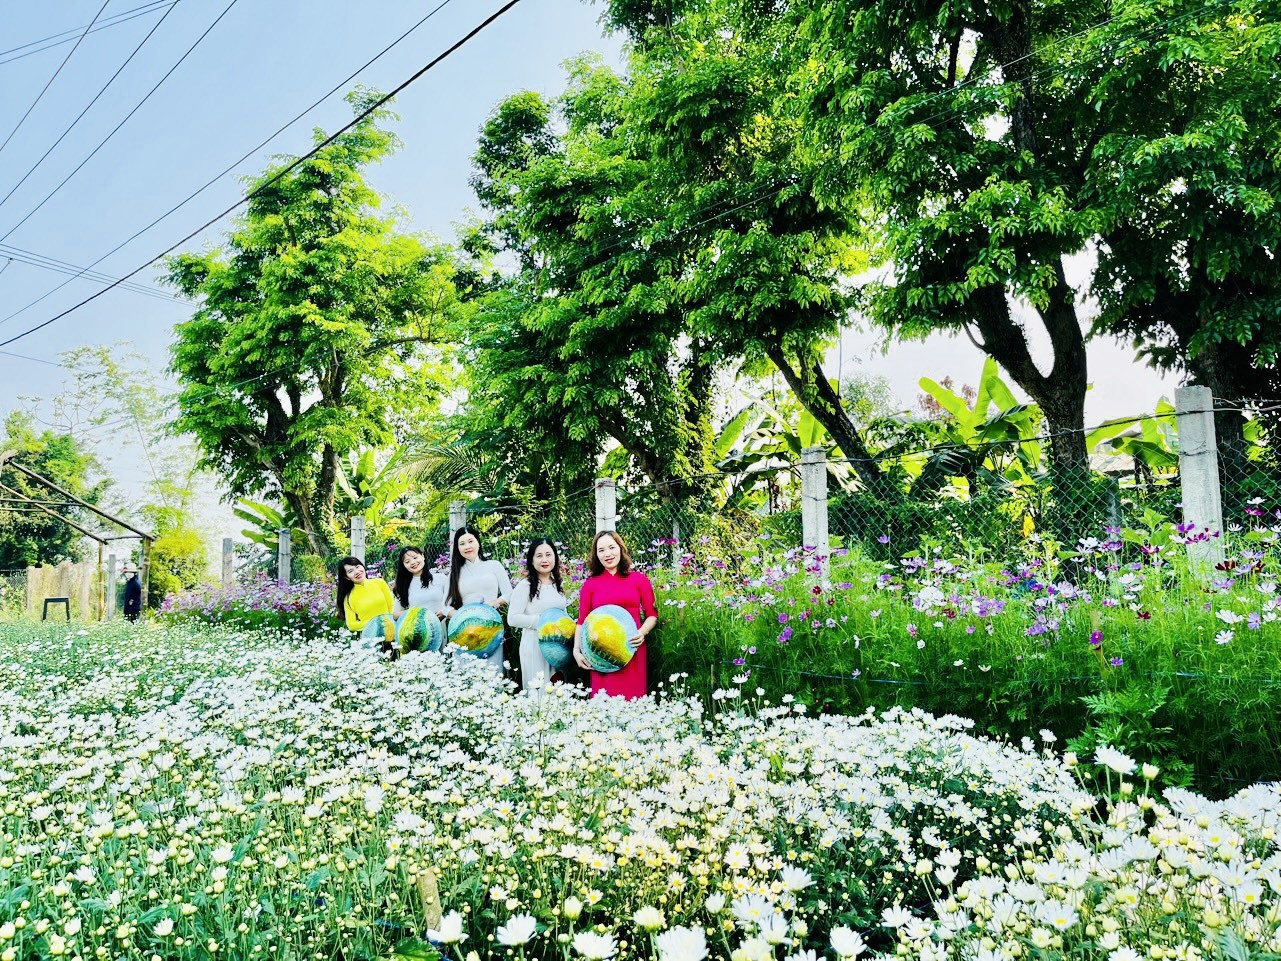 Về với lễ hội mùa hoa sưa năm nay, du khách có thể check-in vườn cúc họa mi ở Hương Trà Tây.